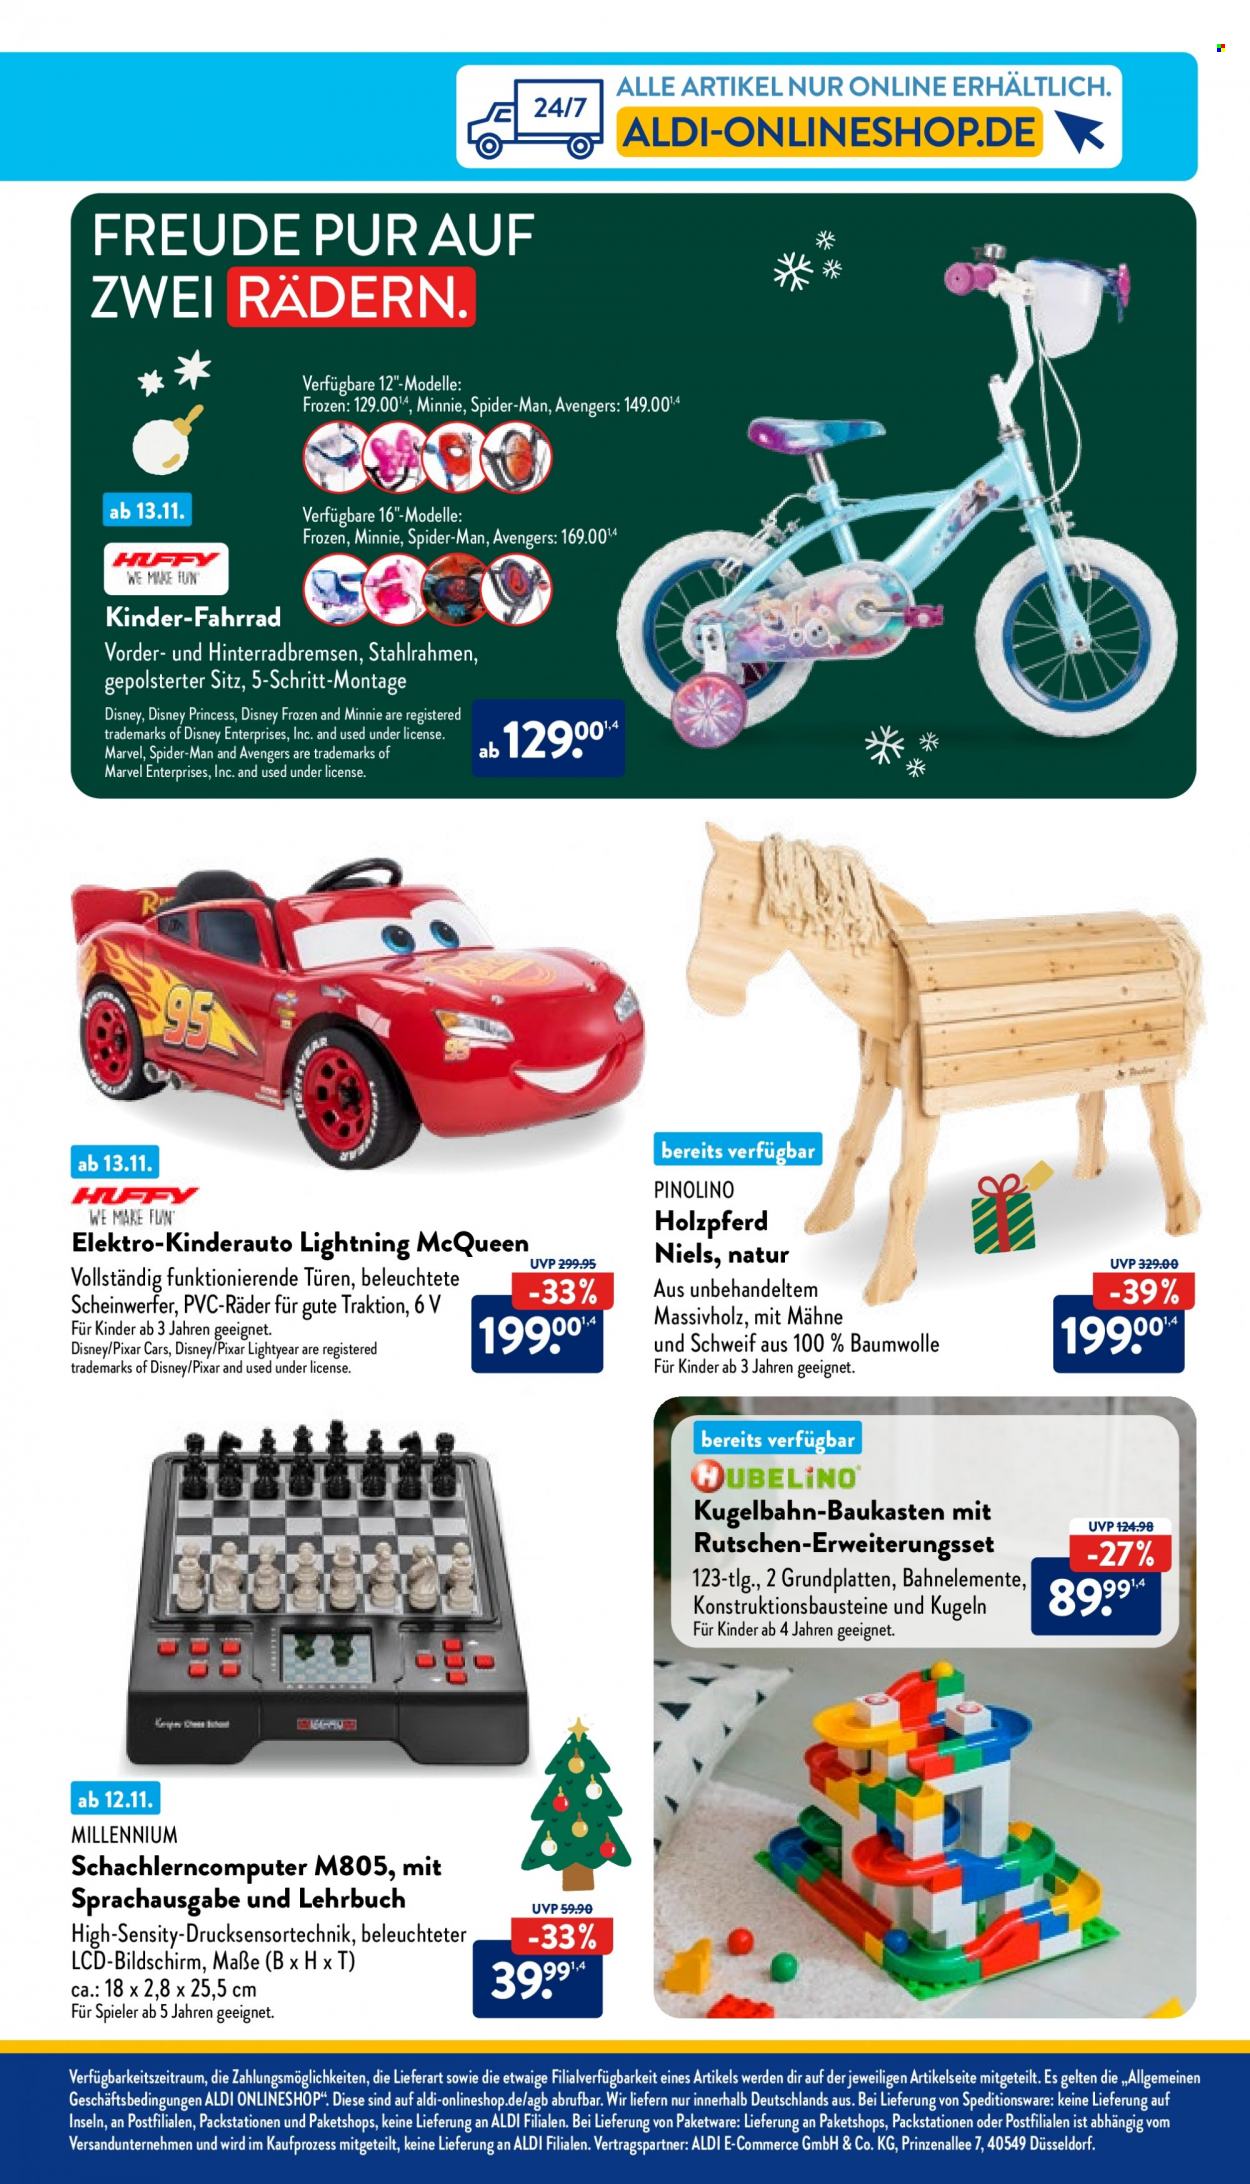 thumbnail - Prospekte ALDI Nord - Produkte in Aktion - Minnie Mouse, Marvel, Disney, McQueen, Spider-Man, Cars, Fahrrad, Kugelbahn, Holz-Spielzeug, Spielzeug, Baukasten, Spielzeug für draußen. Seite 3.